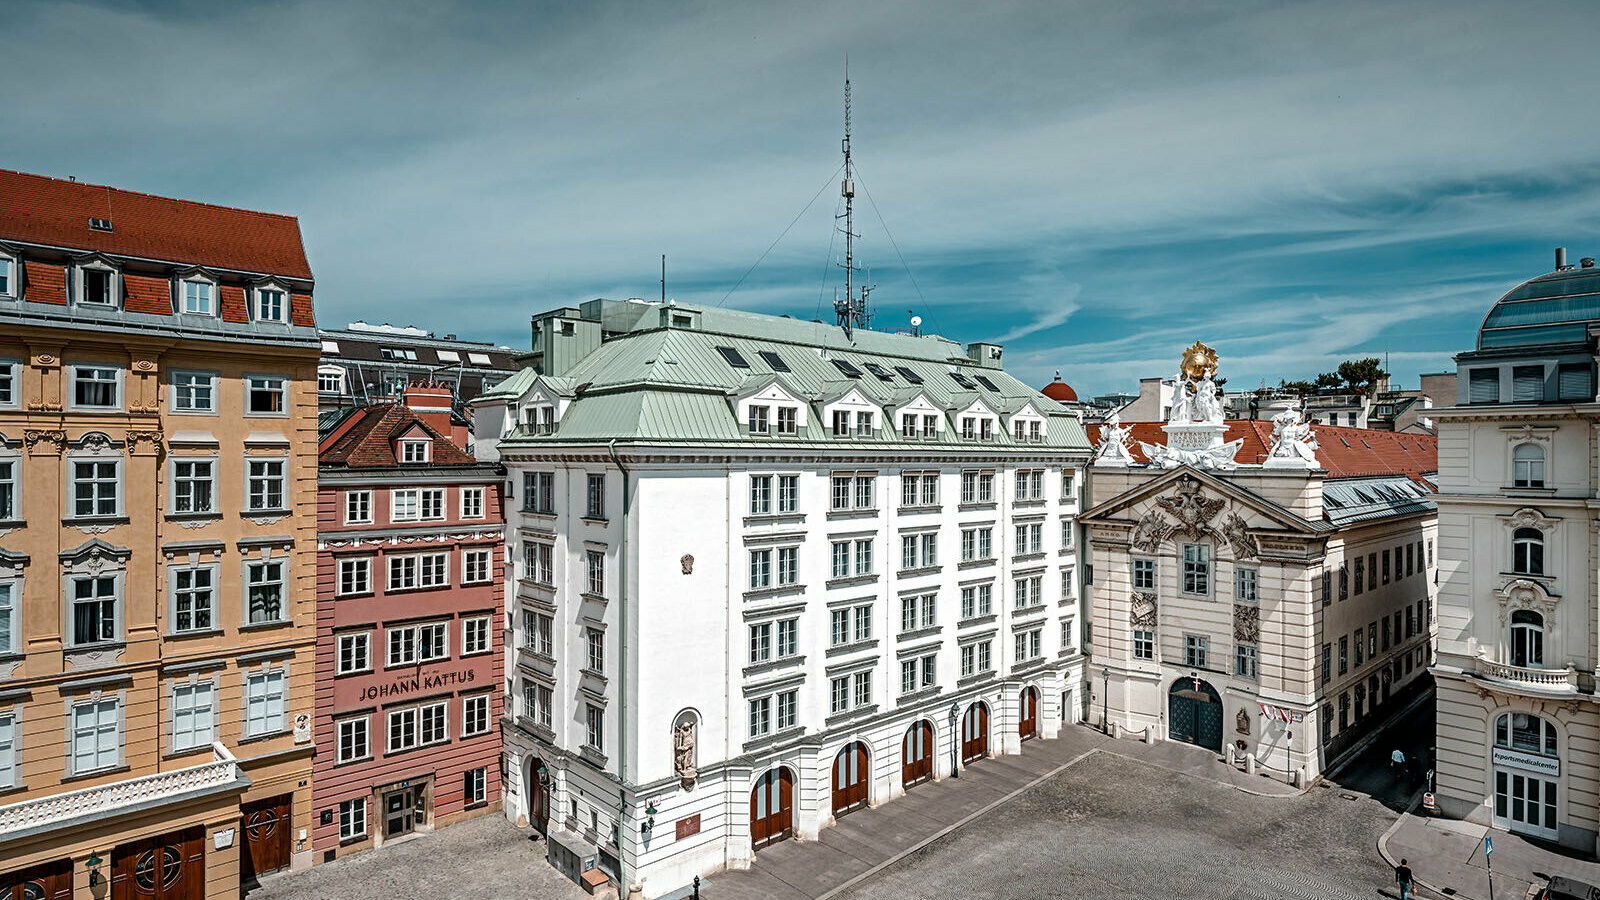 Blick auf die zentrale Feuerwache am Hof in Wien, umgeben von mehreren Gebäuden. Das Dach ist mit Prefalz in P.10 patinagrün eingedeckt.